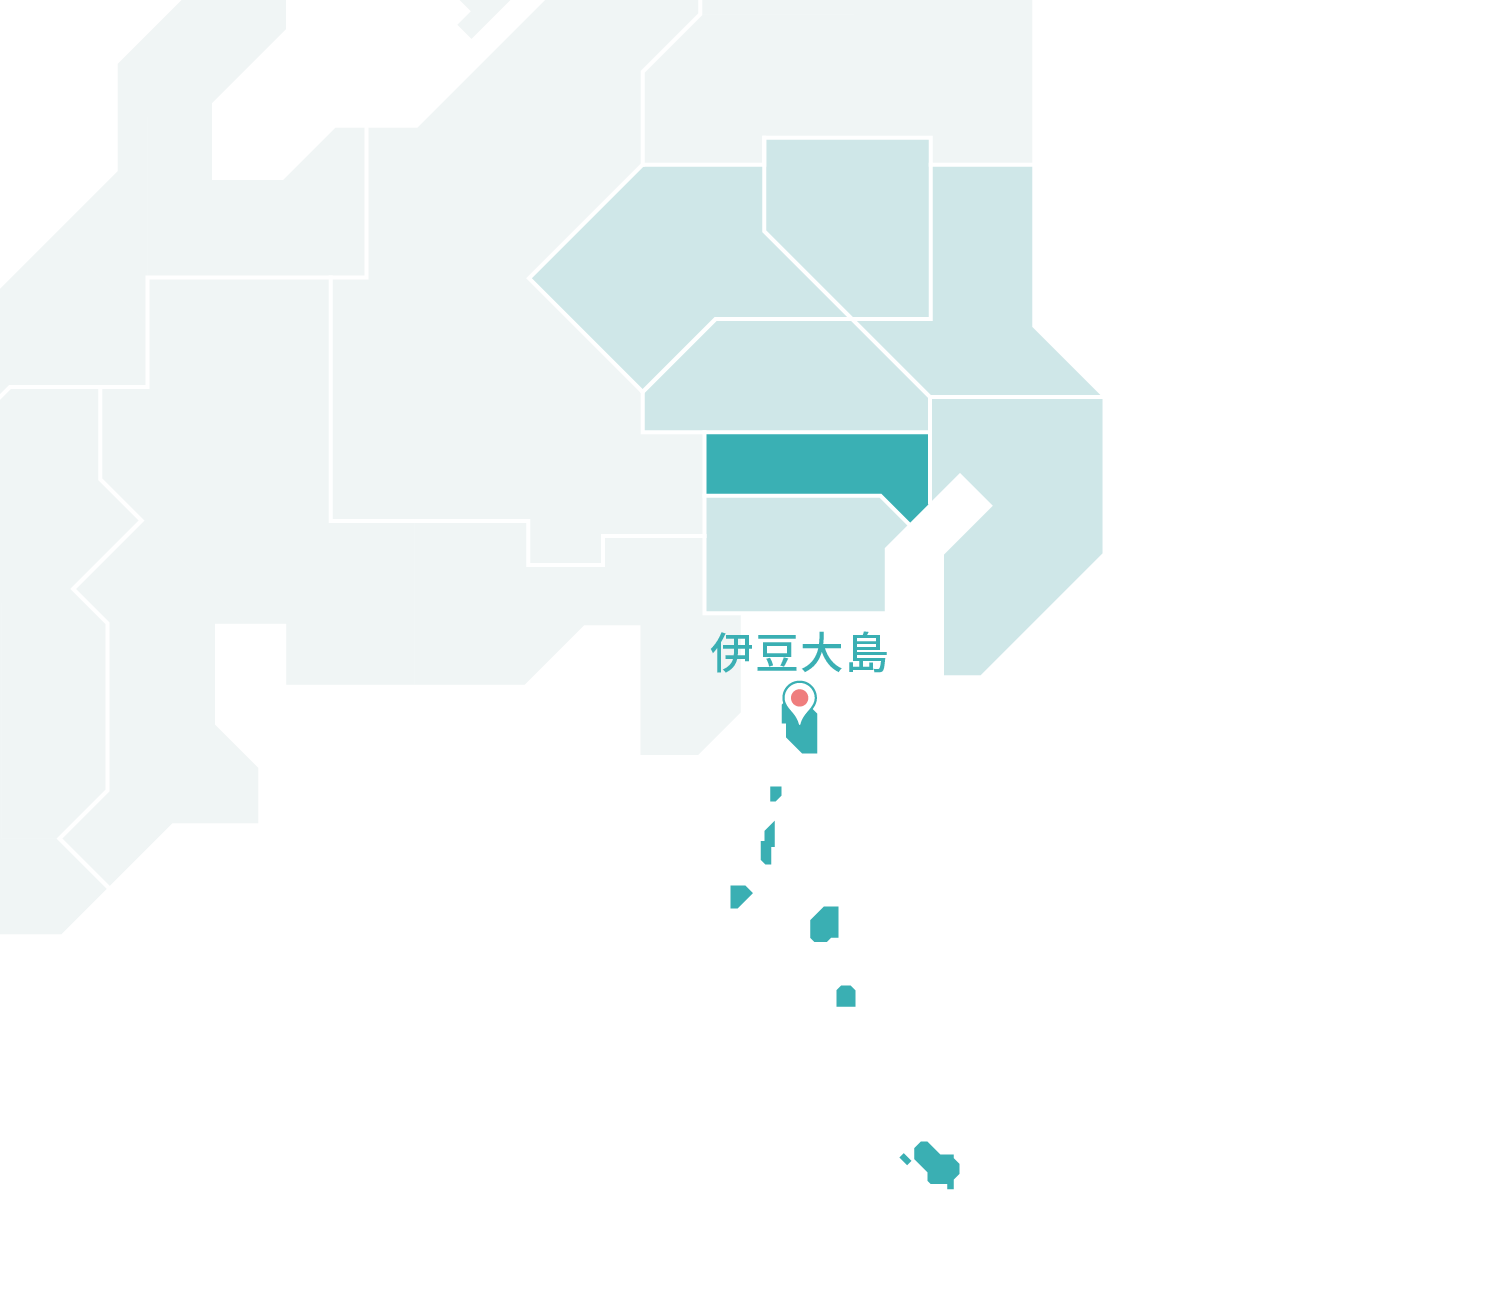 伊豆大島マップ